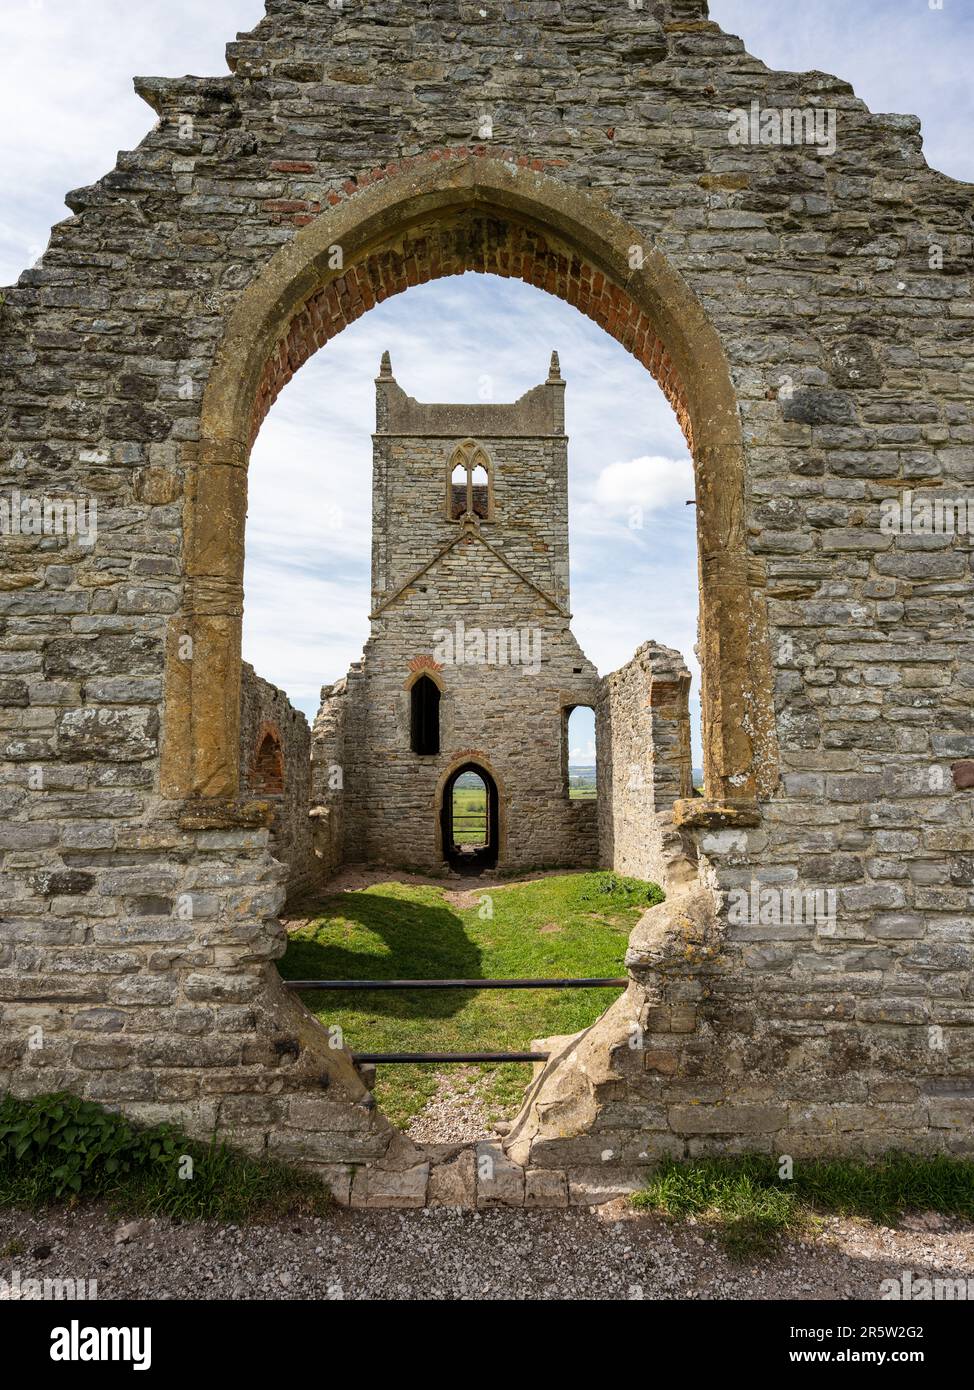 Les ruines de l'église Saint-Michel se trouvent au sommet de la colline Burrow Mump, sur les niveaux du Somerset en Angleterre. Banque D'Images